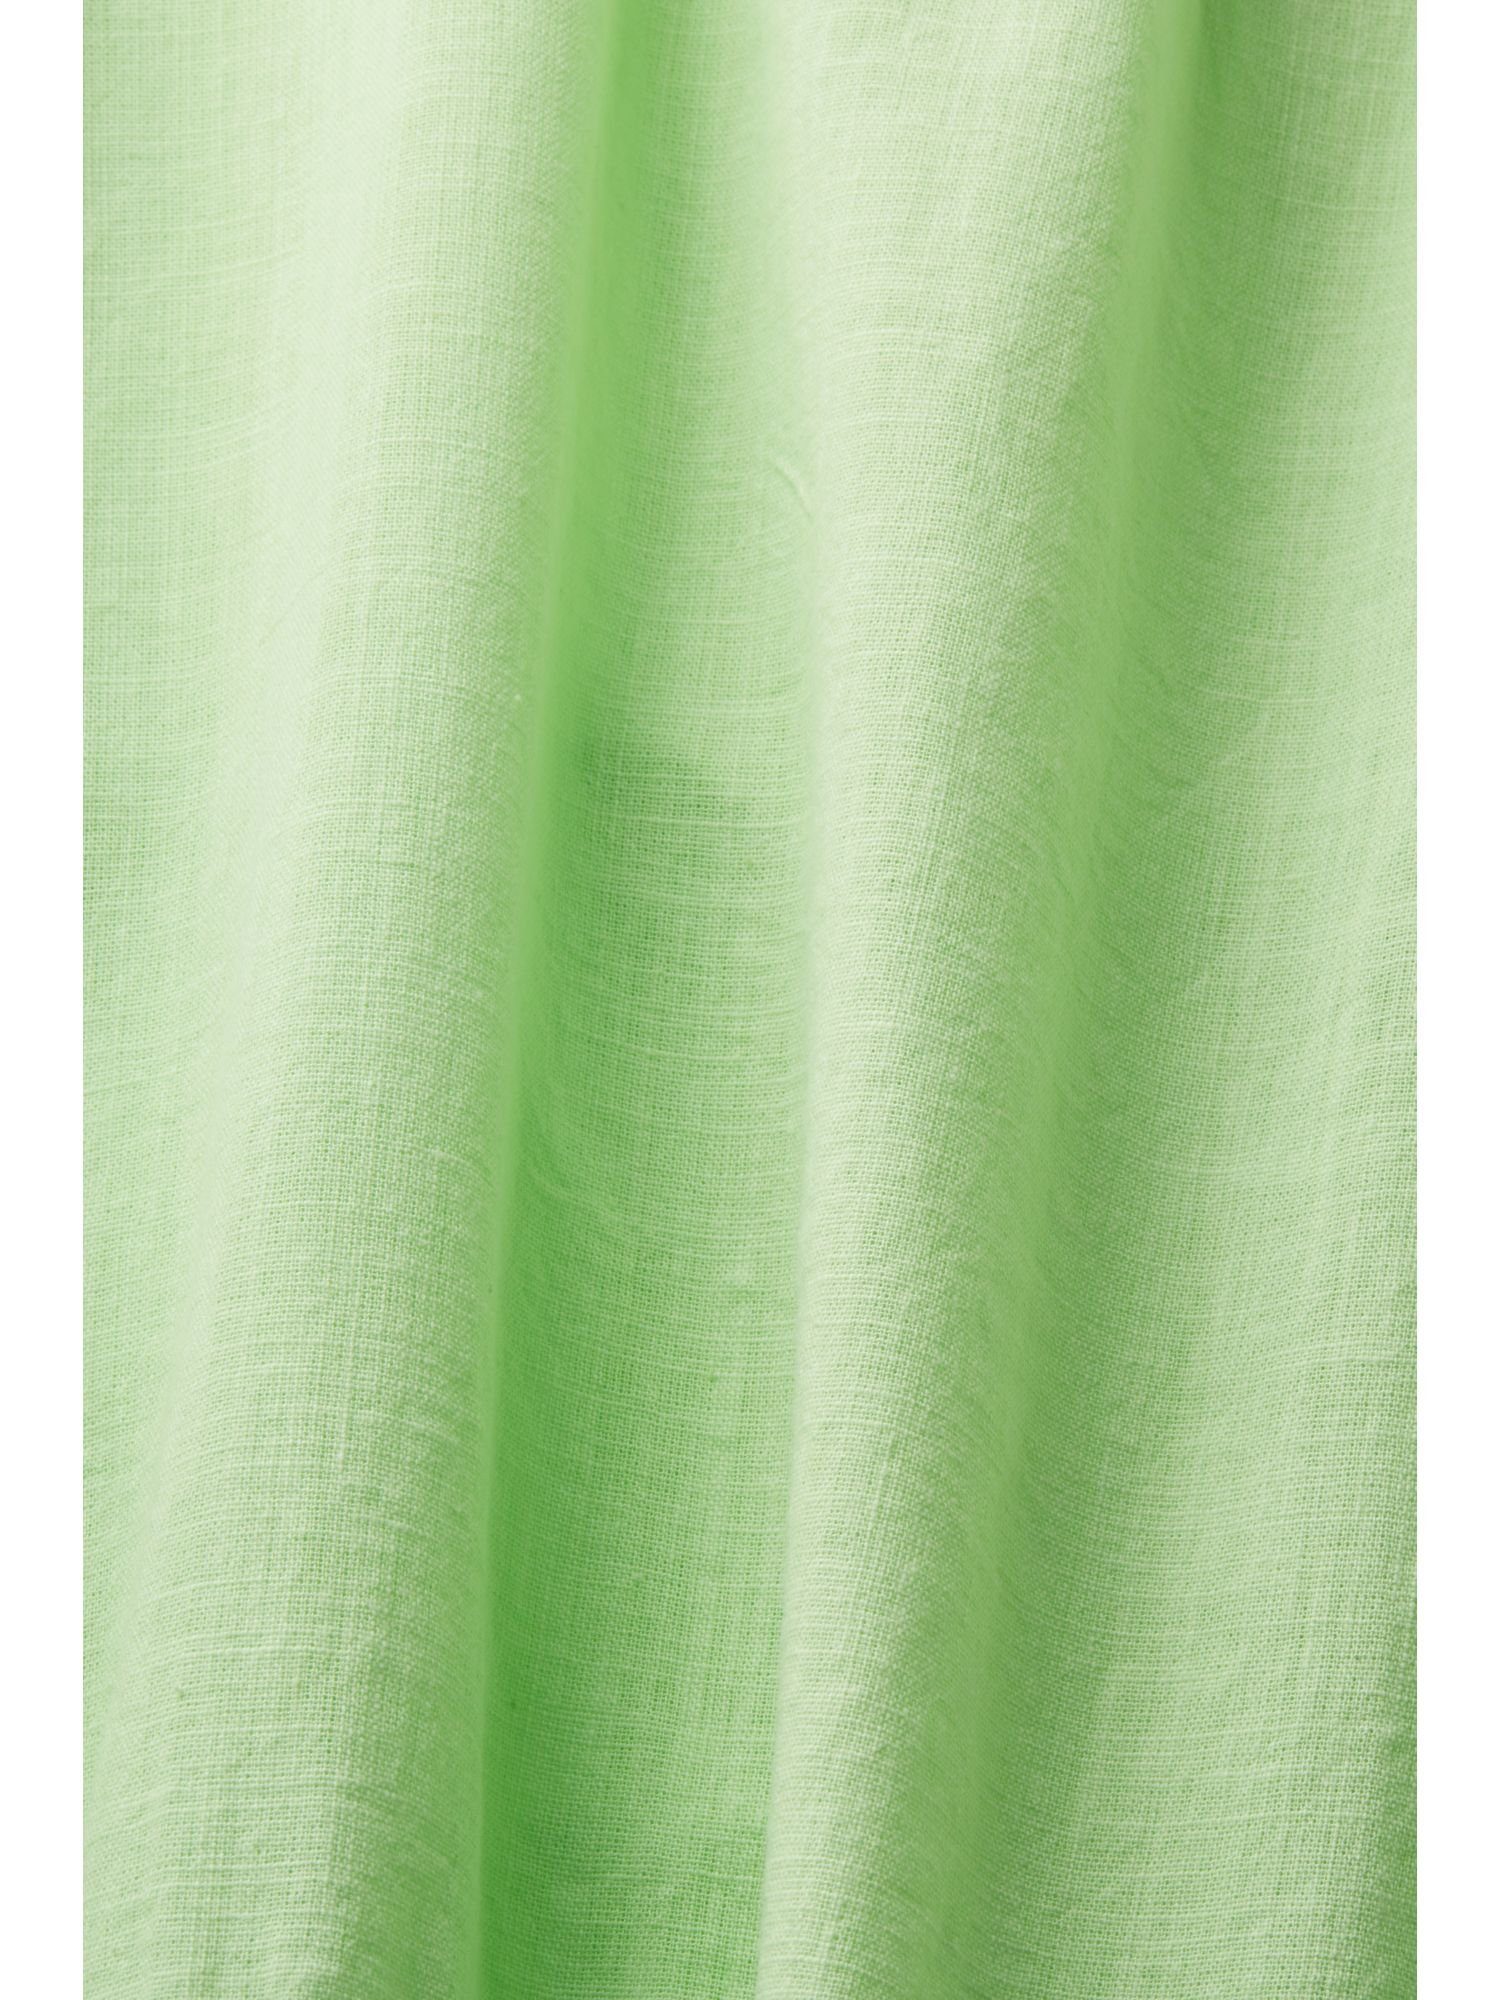 GREEN mit Ärmeln Bluse Baumwolle Kurzarmbluse CITRUS aus Esprit nachhaltiger kurzen